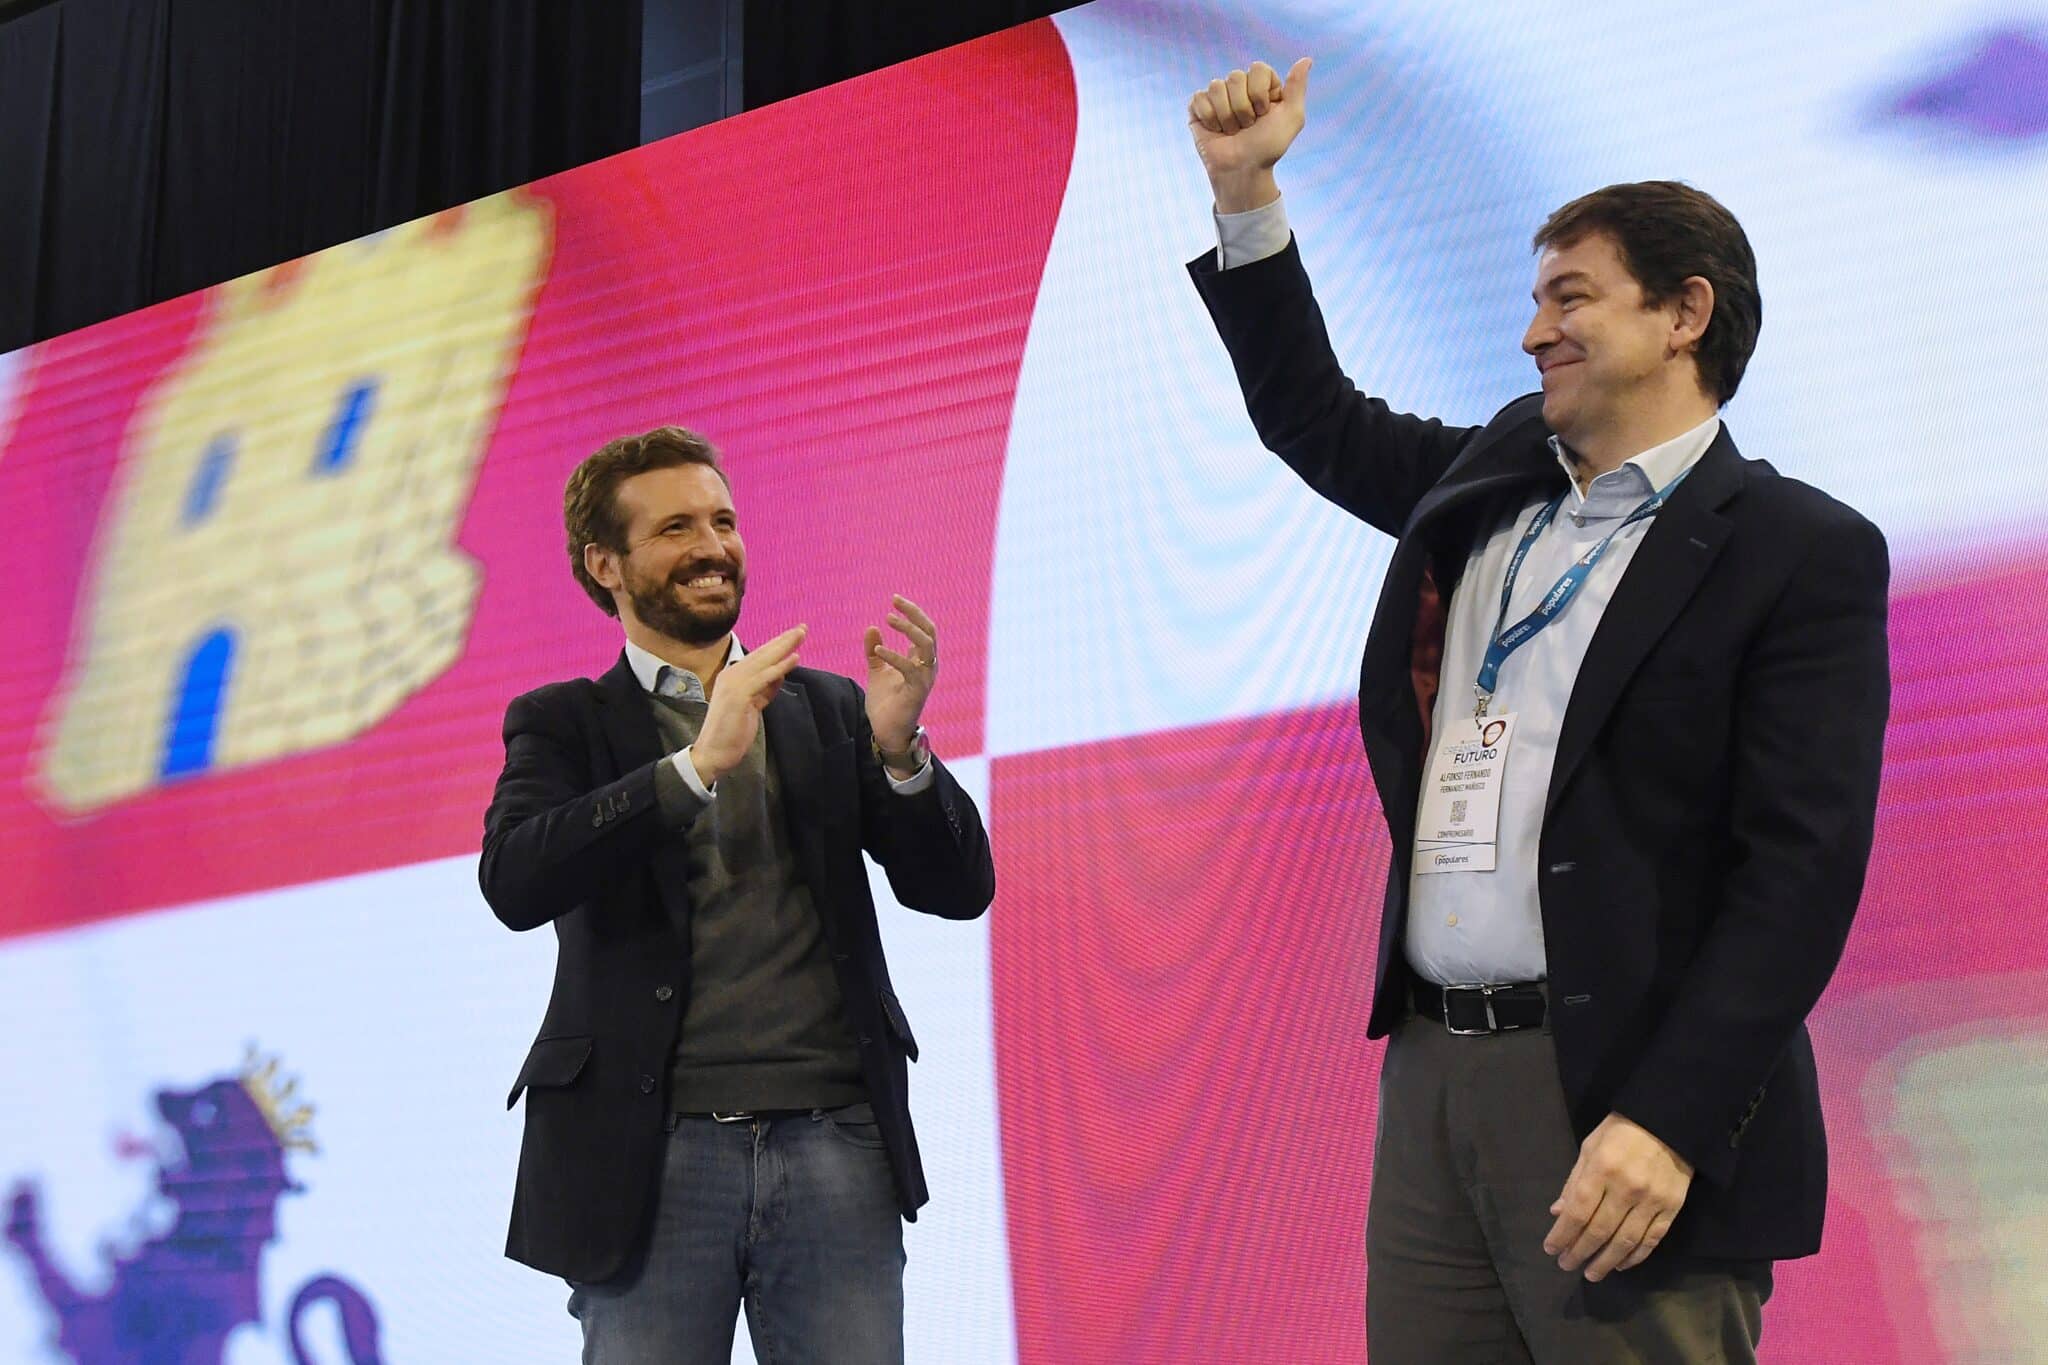 El presidente de la Junta de Castilla y León y candidato a la reelección, Alfonso Fernández Mañueco (d), es aplaudido por el líder del PP, Pablo Casado